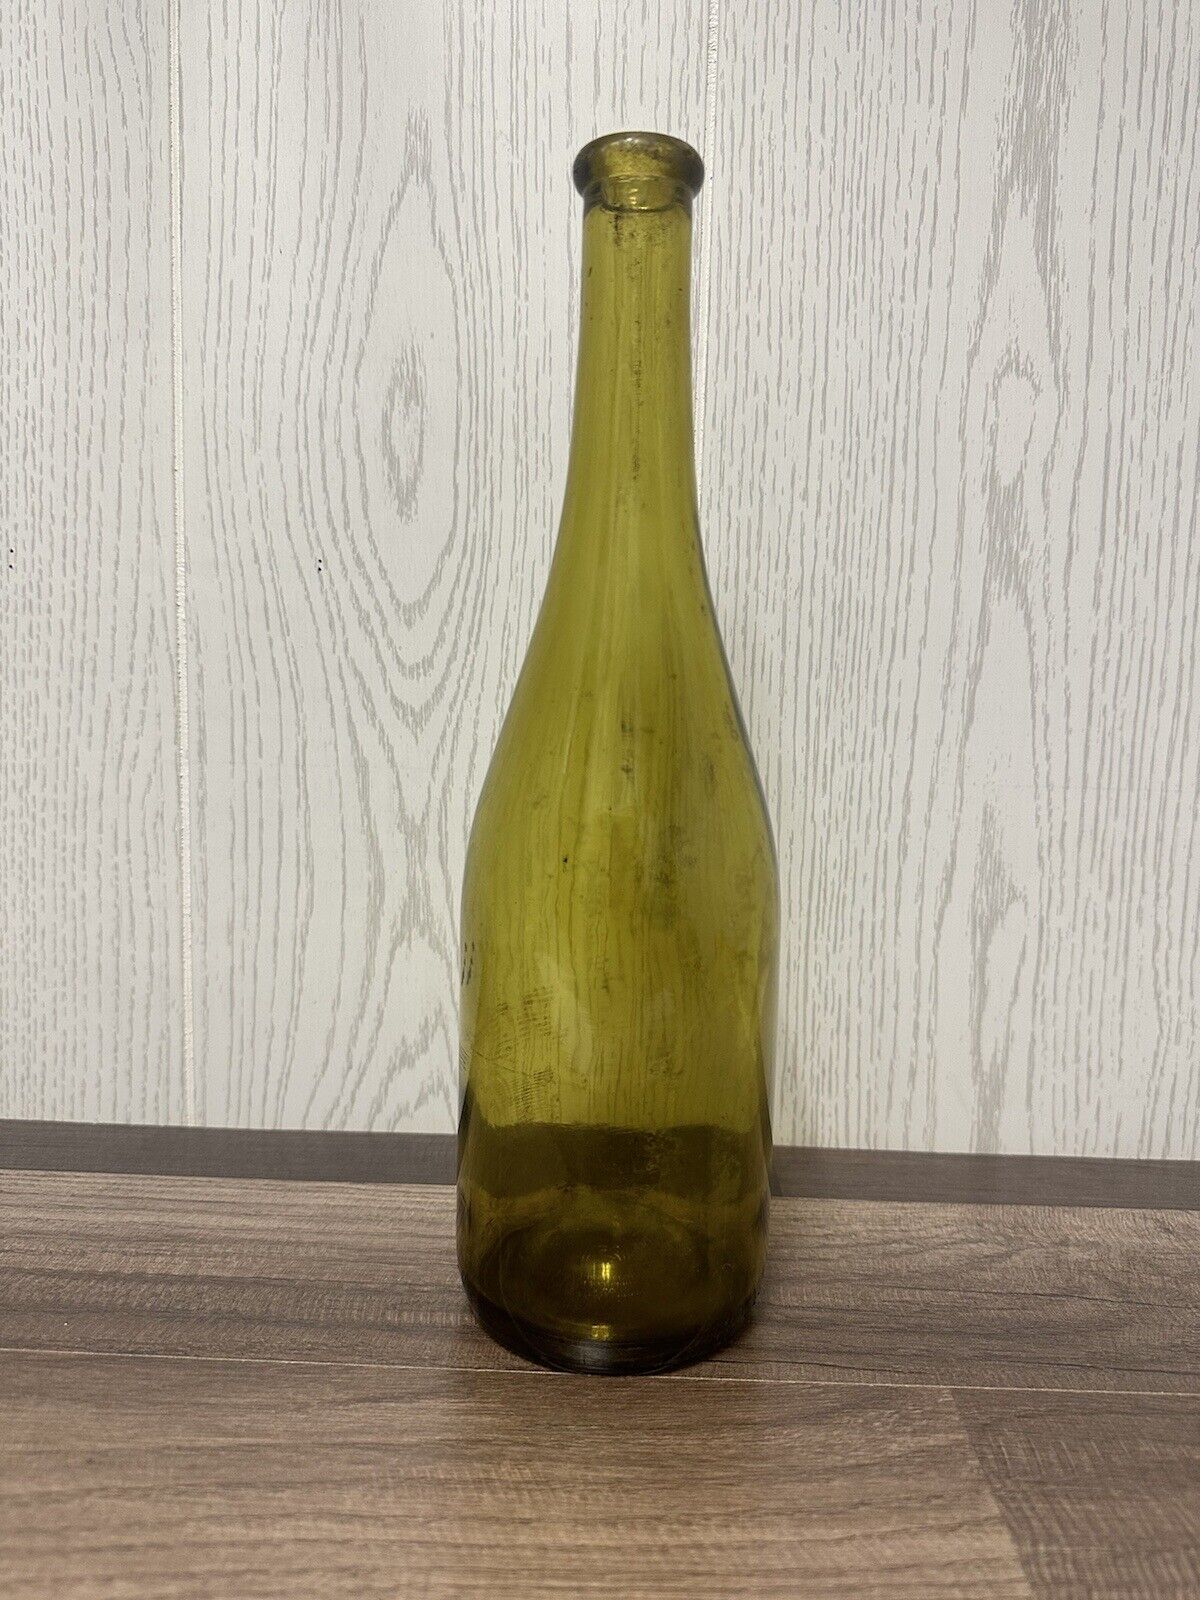 Antique/Vintage Green Wine Bottle